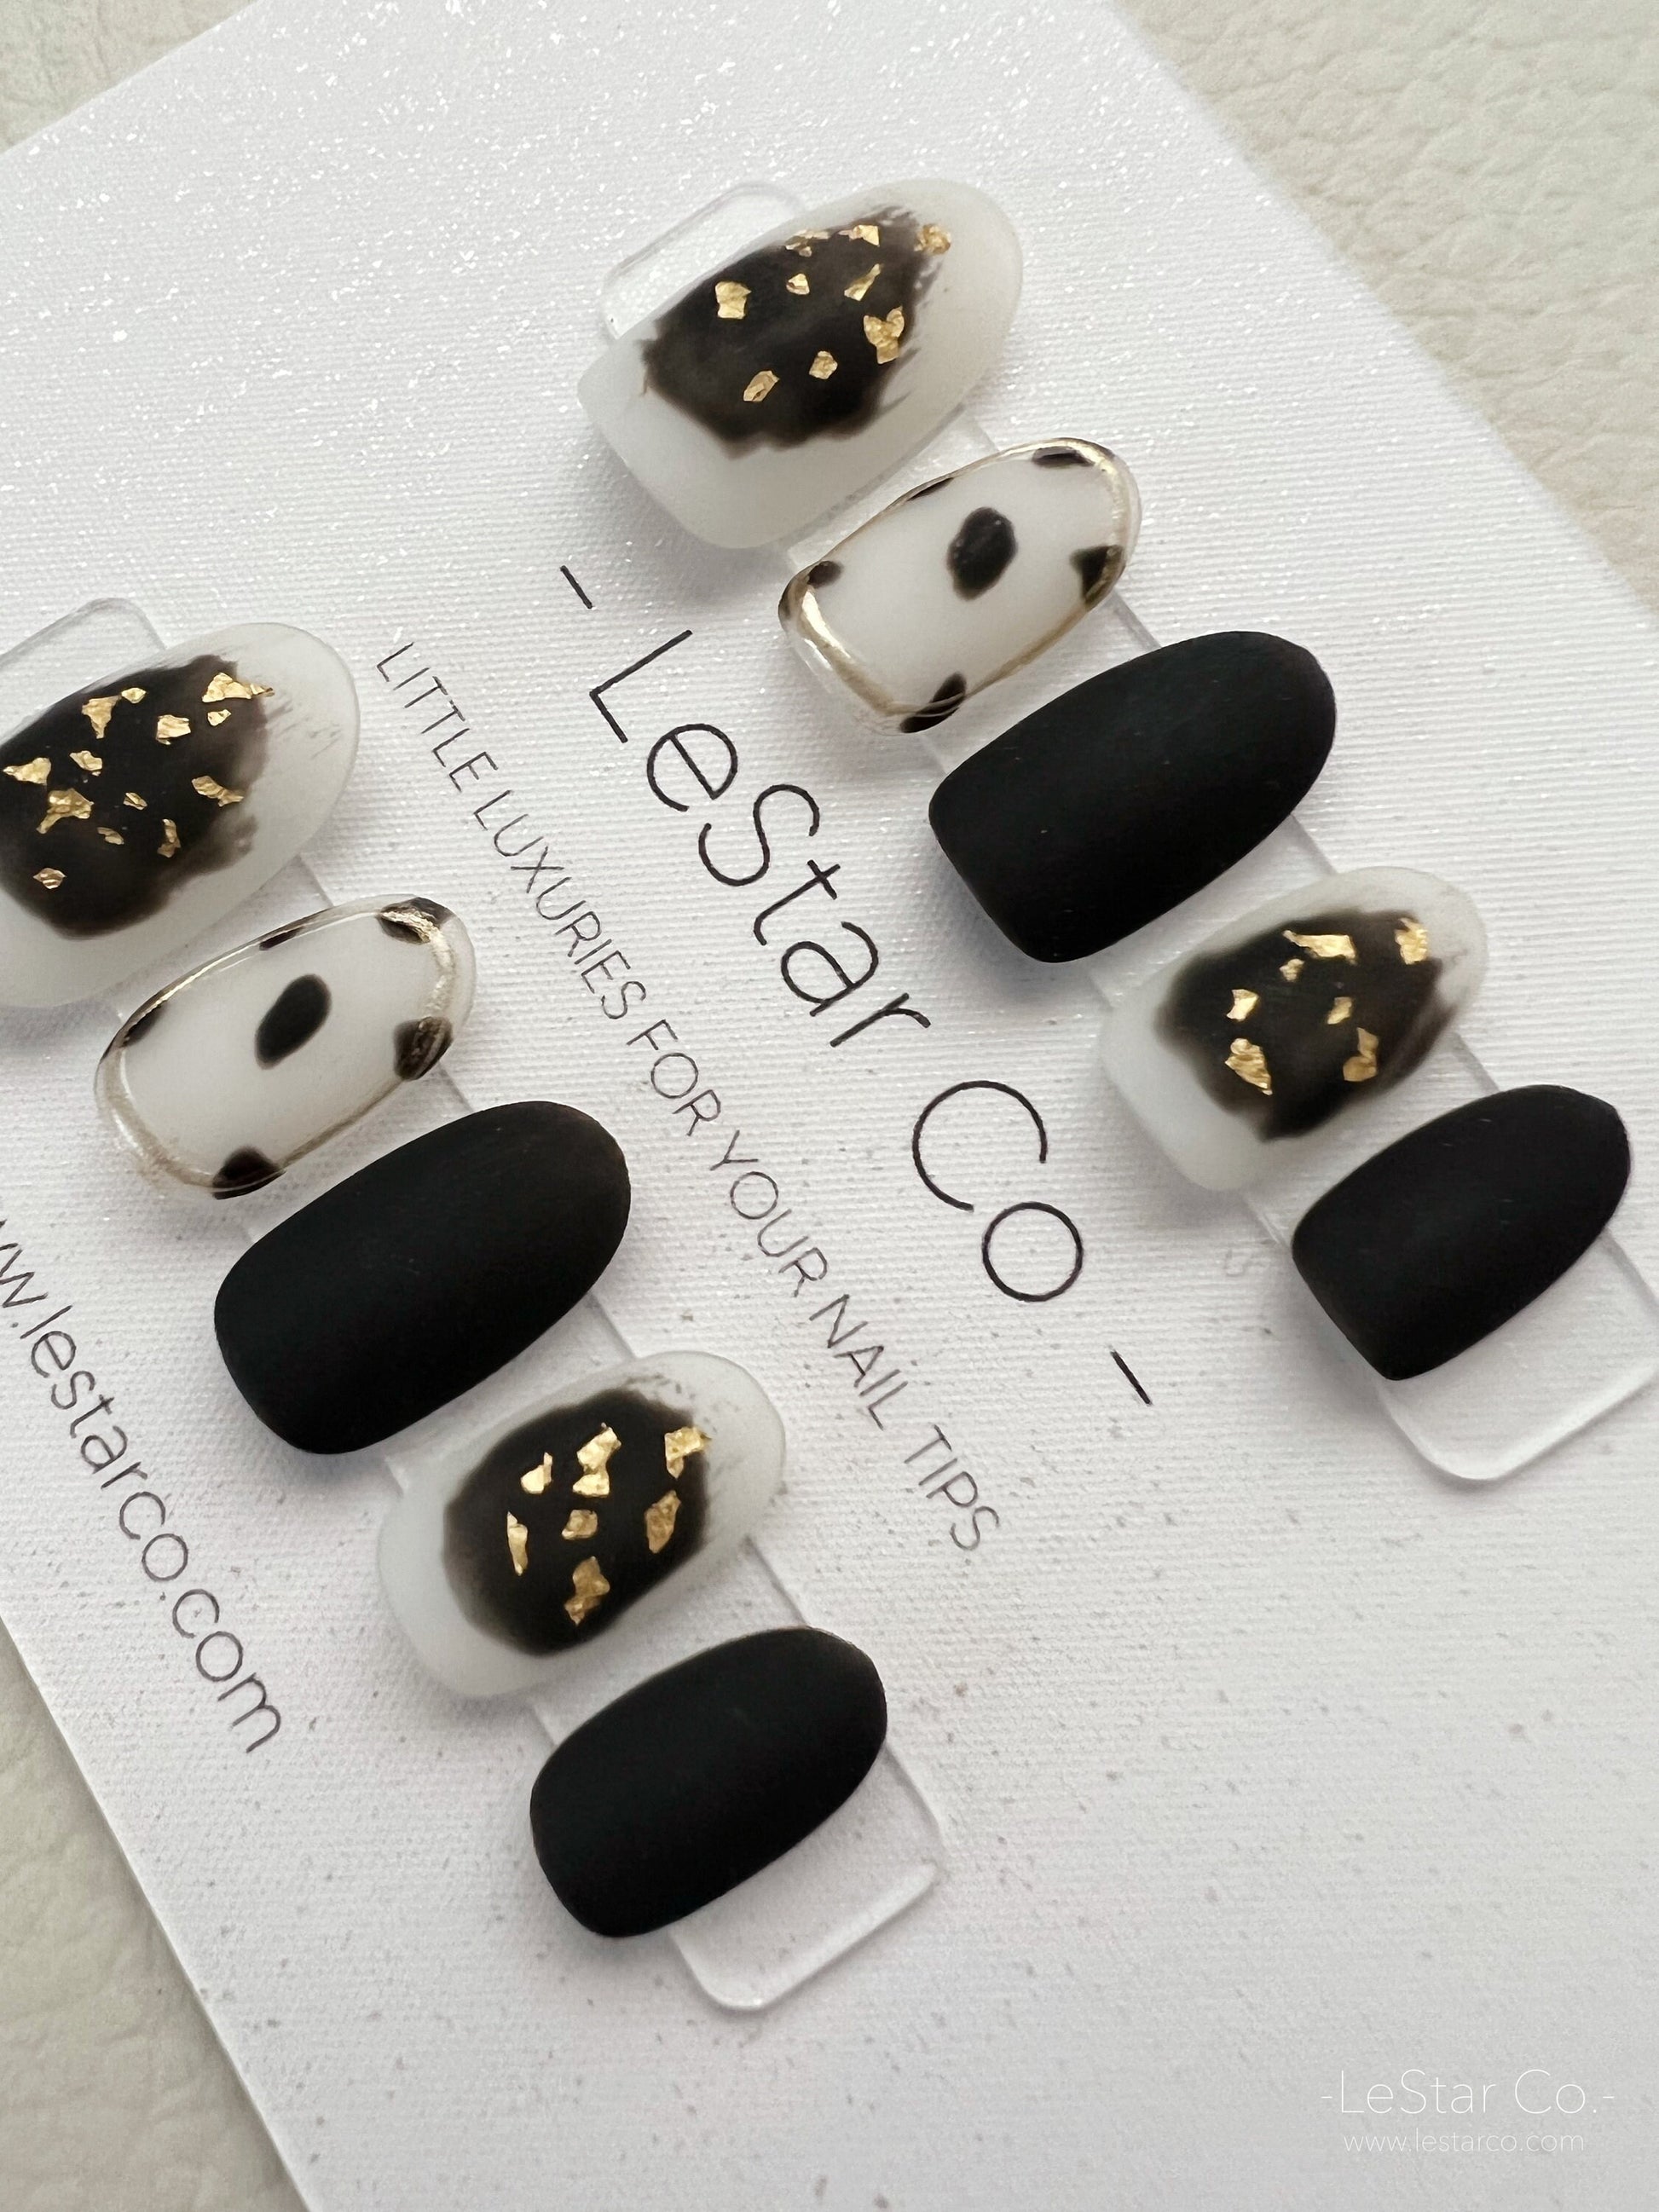 Reusable Matte Black Gold Foil Premium Press on Nails Gel Manicure | Fake Nails | Handmade | Lestarco faux nails xwz142